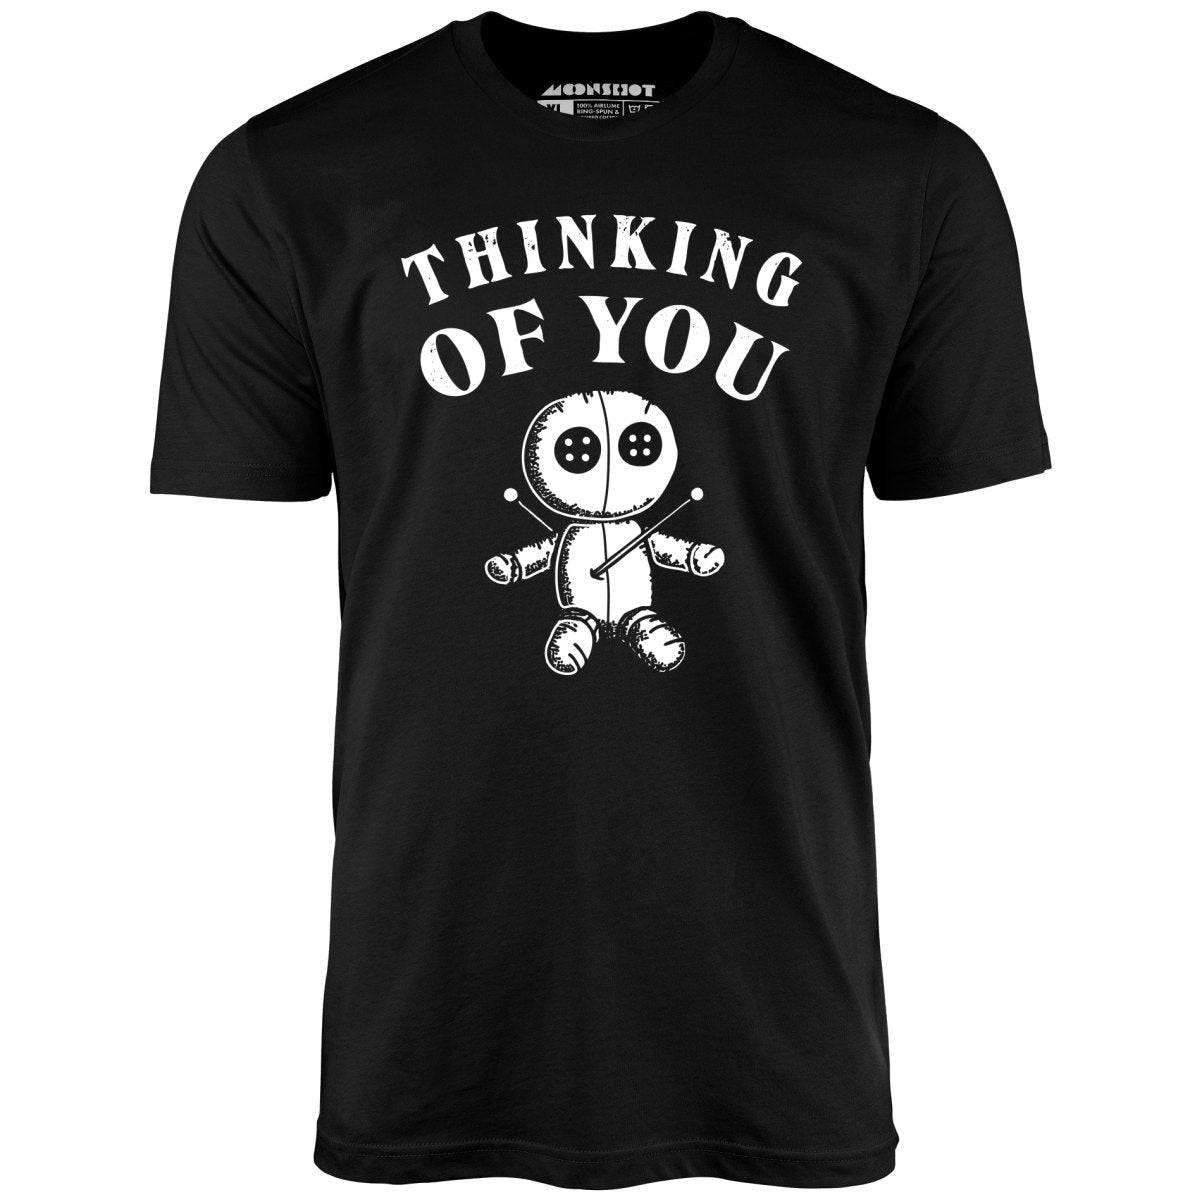 Thinking of You. - Unisex T-Shirt